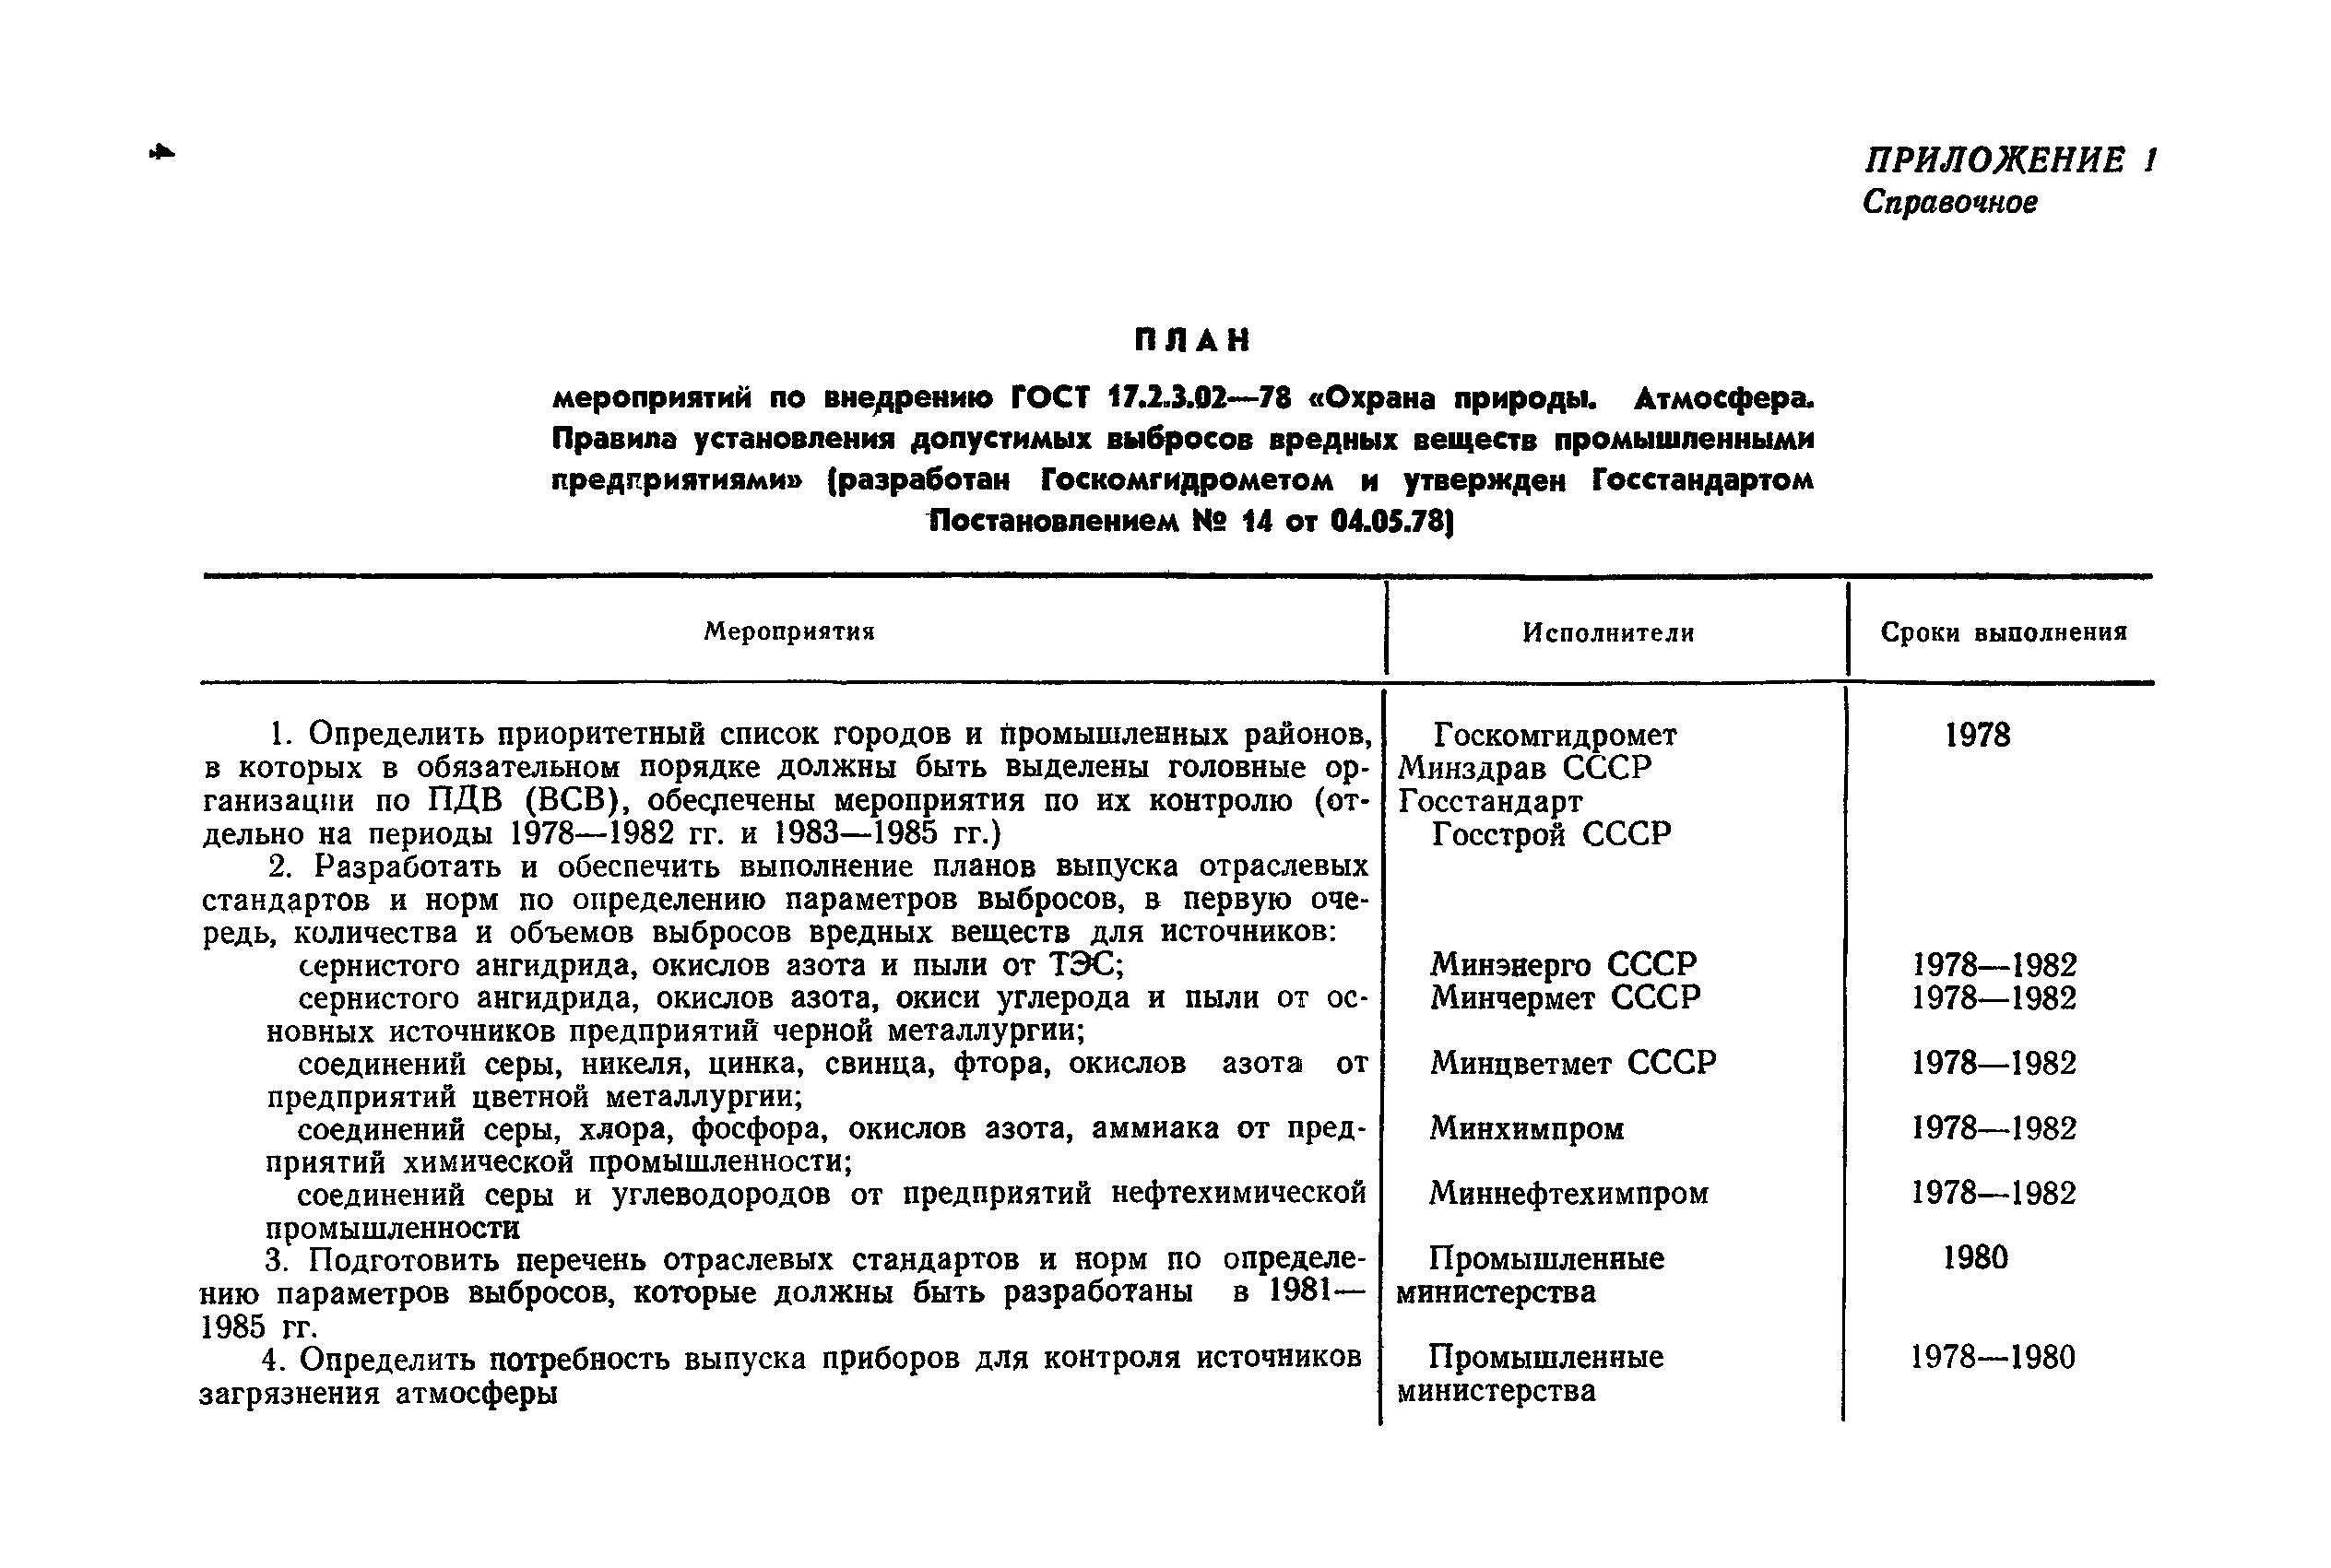 РД 50-210-80